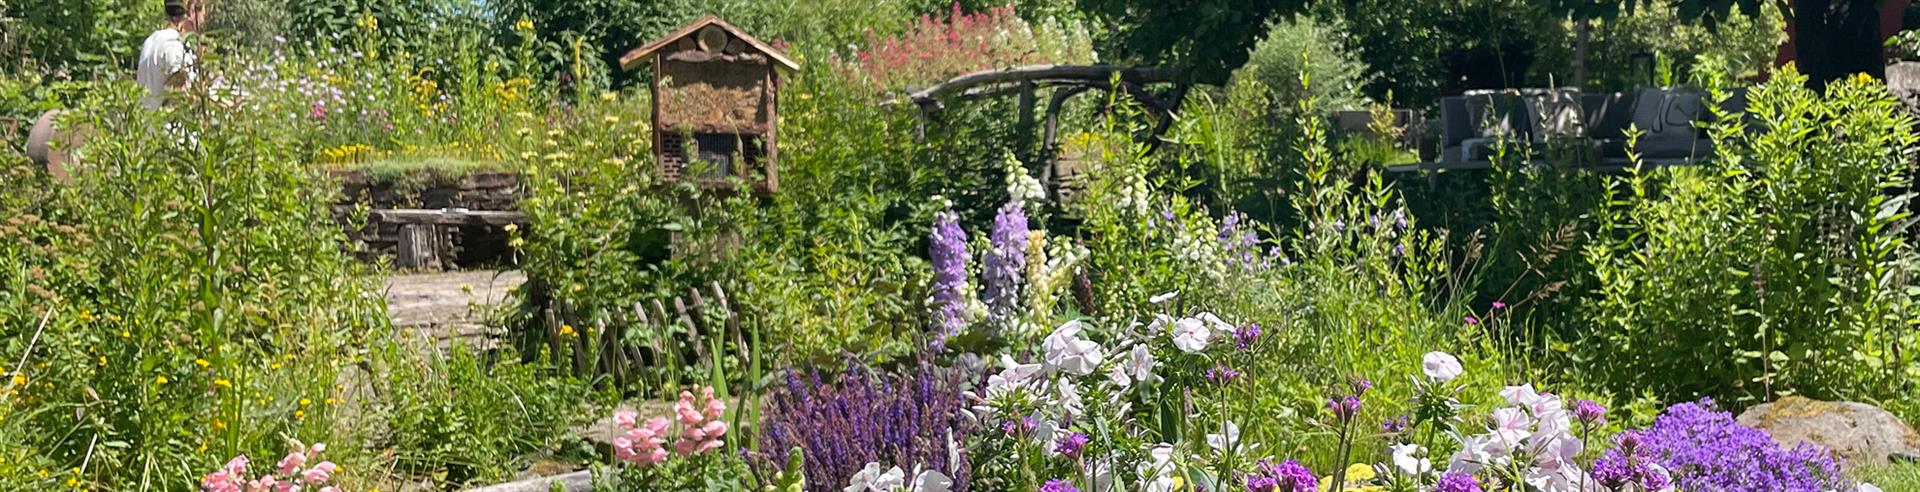 Naturnahe Gartengestaltung bietet Rückzugsraum und Entspannung